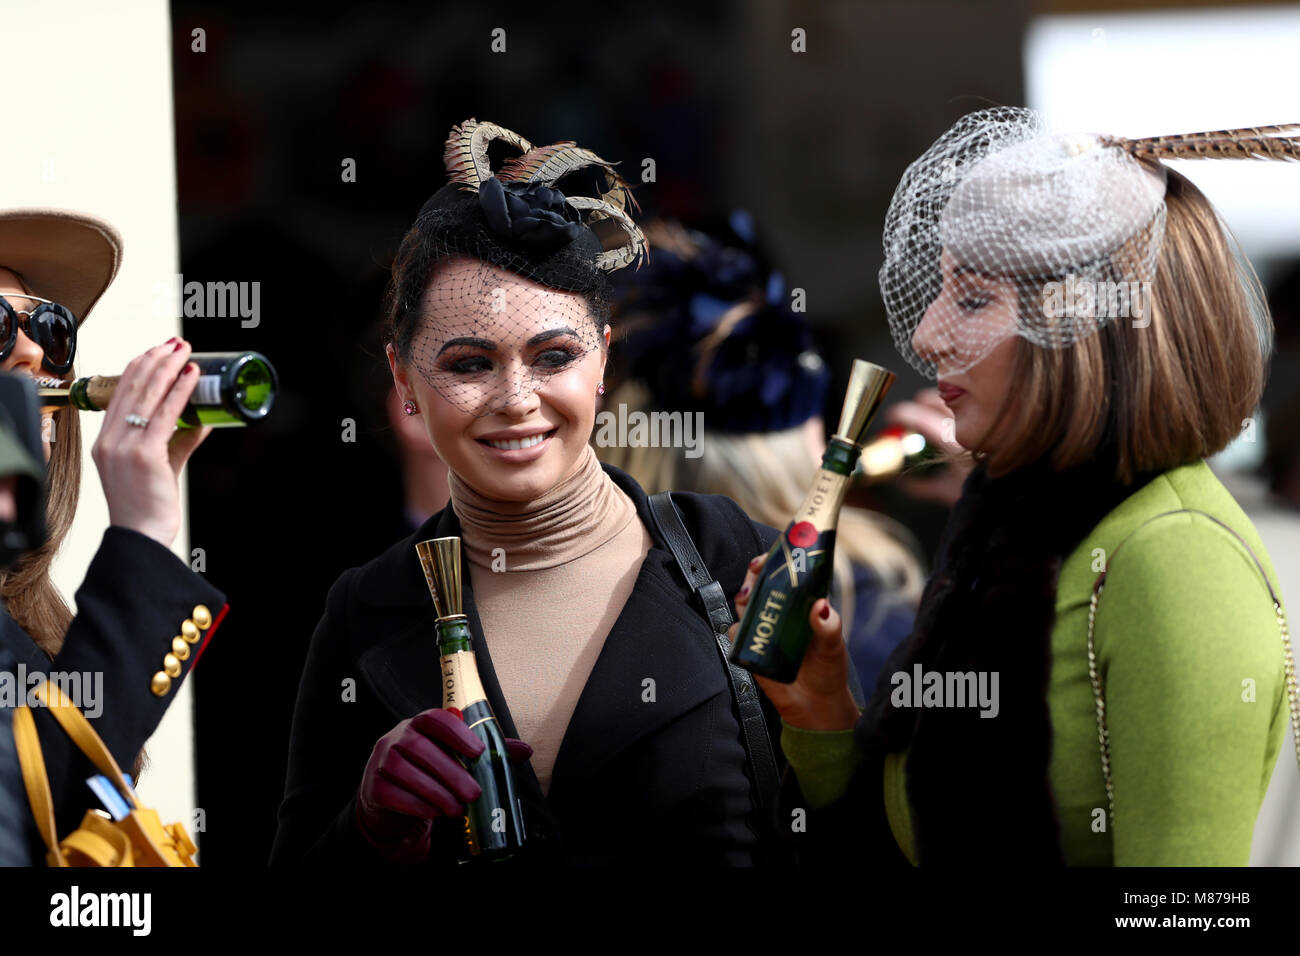 Weibliche racegoers genießen Sie einen Drink während der St Patrick's Donnerstag der Cheltenham Festival 2018 in Cheltenham Racecourse. Stockfoto